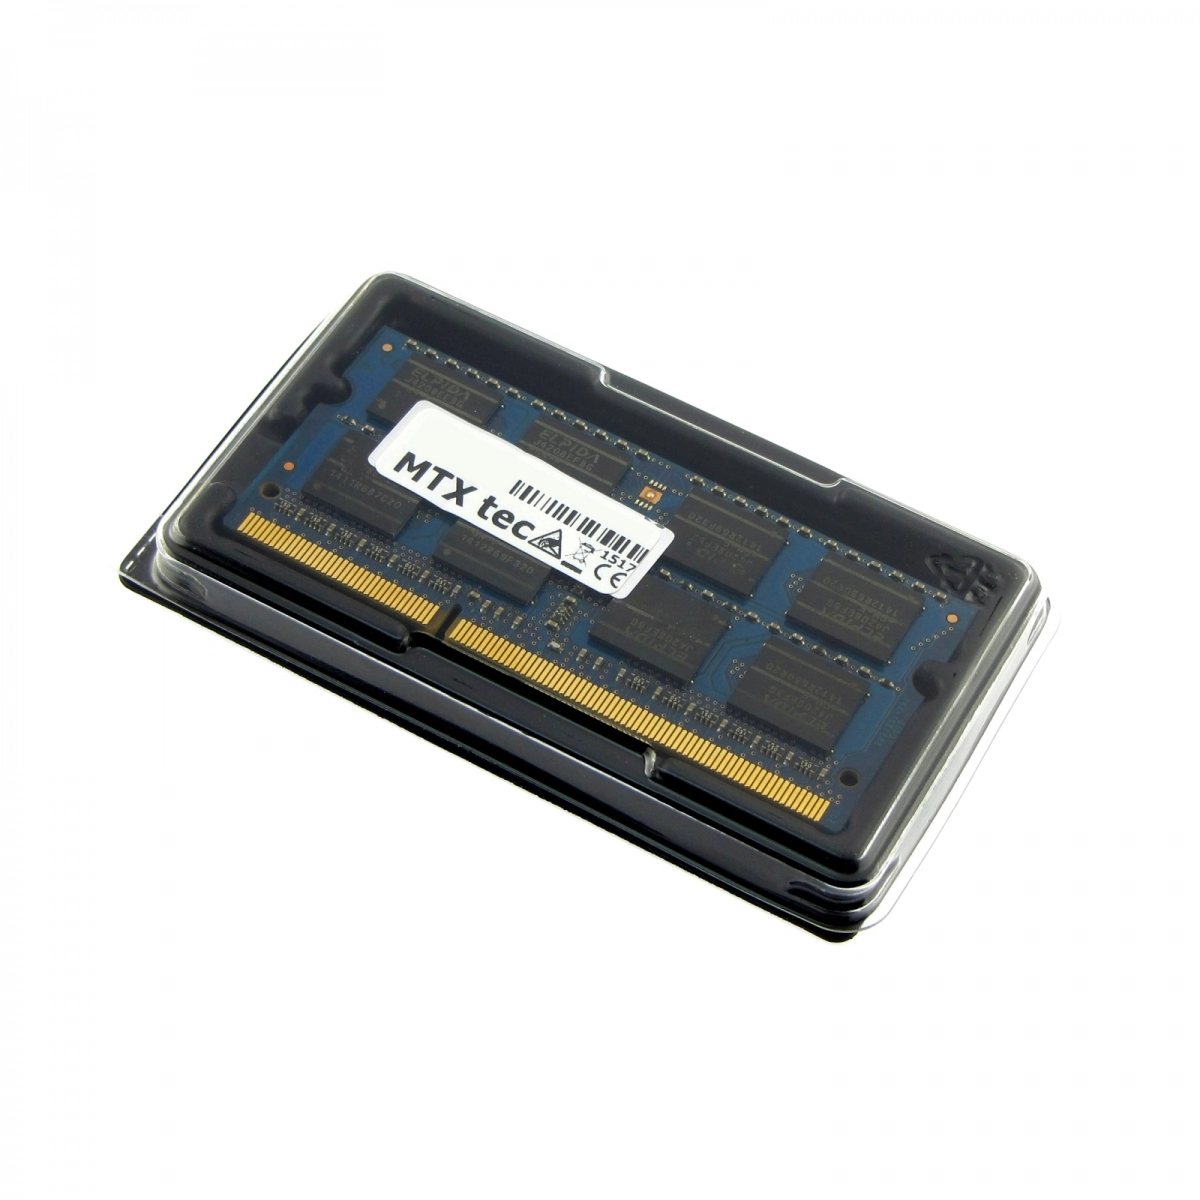 MTXtec Arbeitsspeicher 4 GB RAM für FUJITSU LifeBook S751